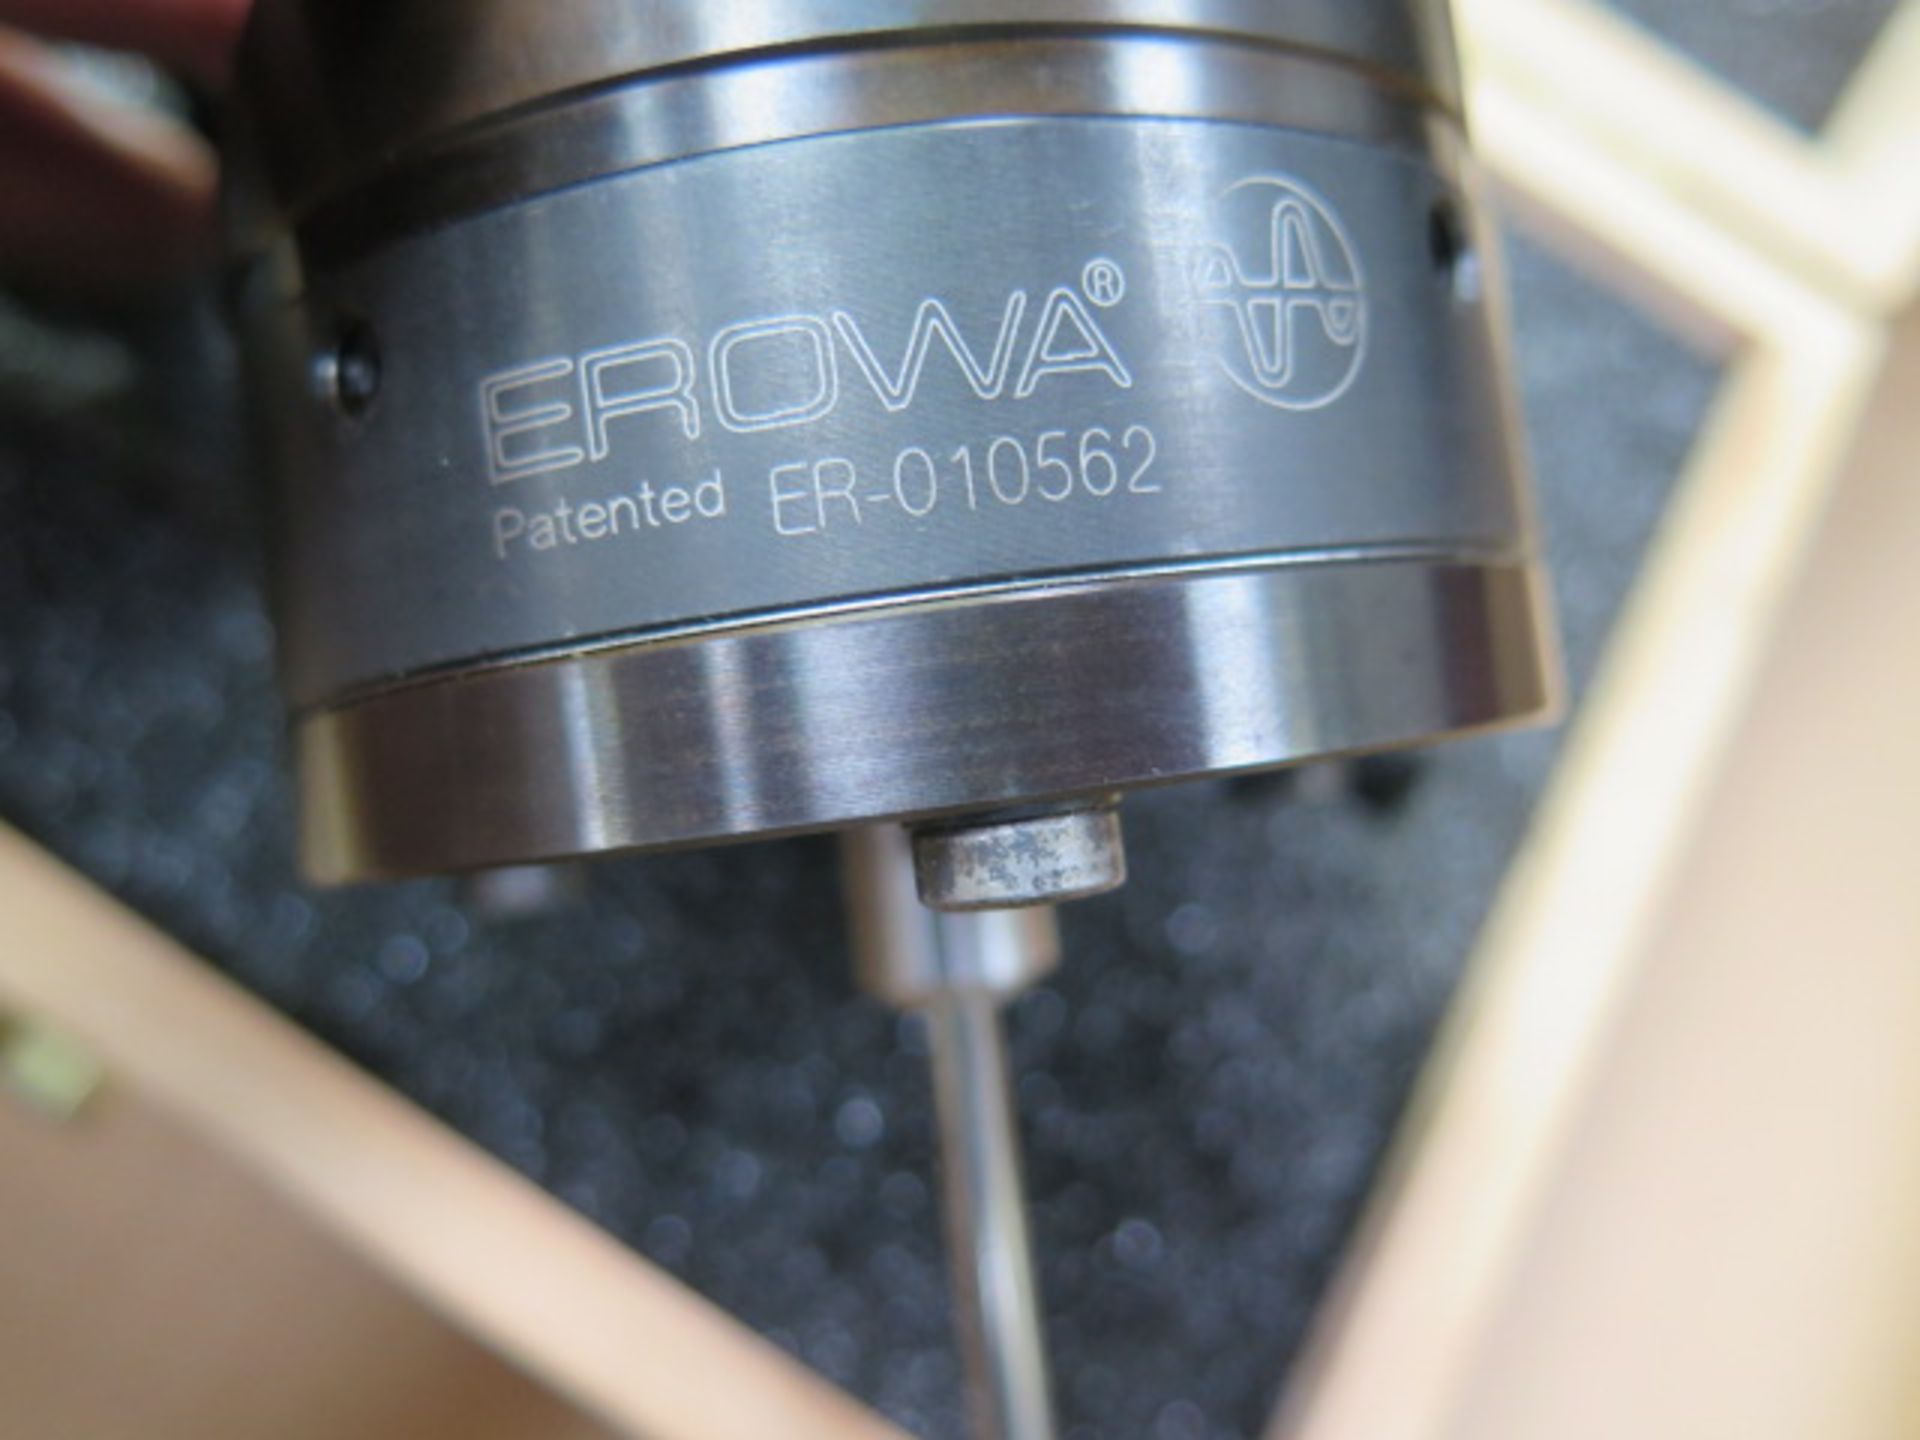 Erowa ER-010562 Probe Head (SOLD AS-IS - NO WARRANTY) - Image 4 of 4